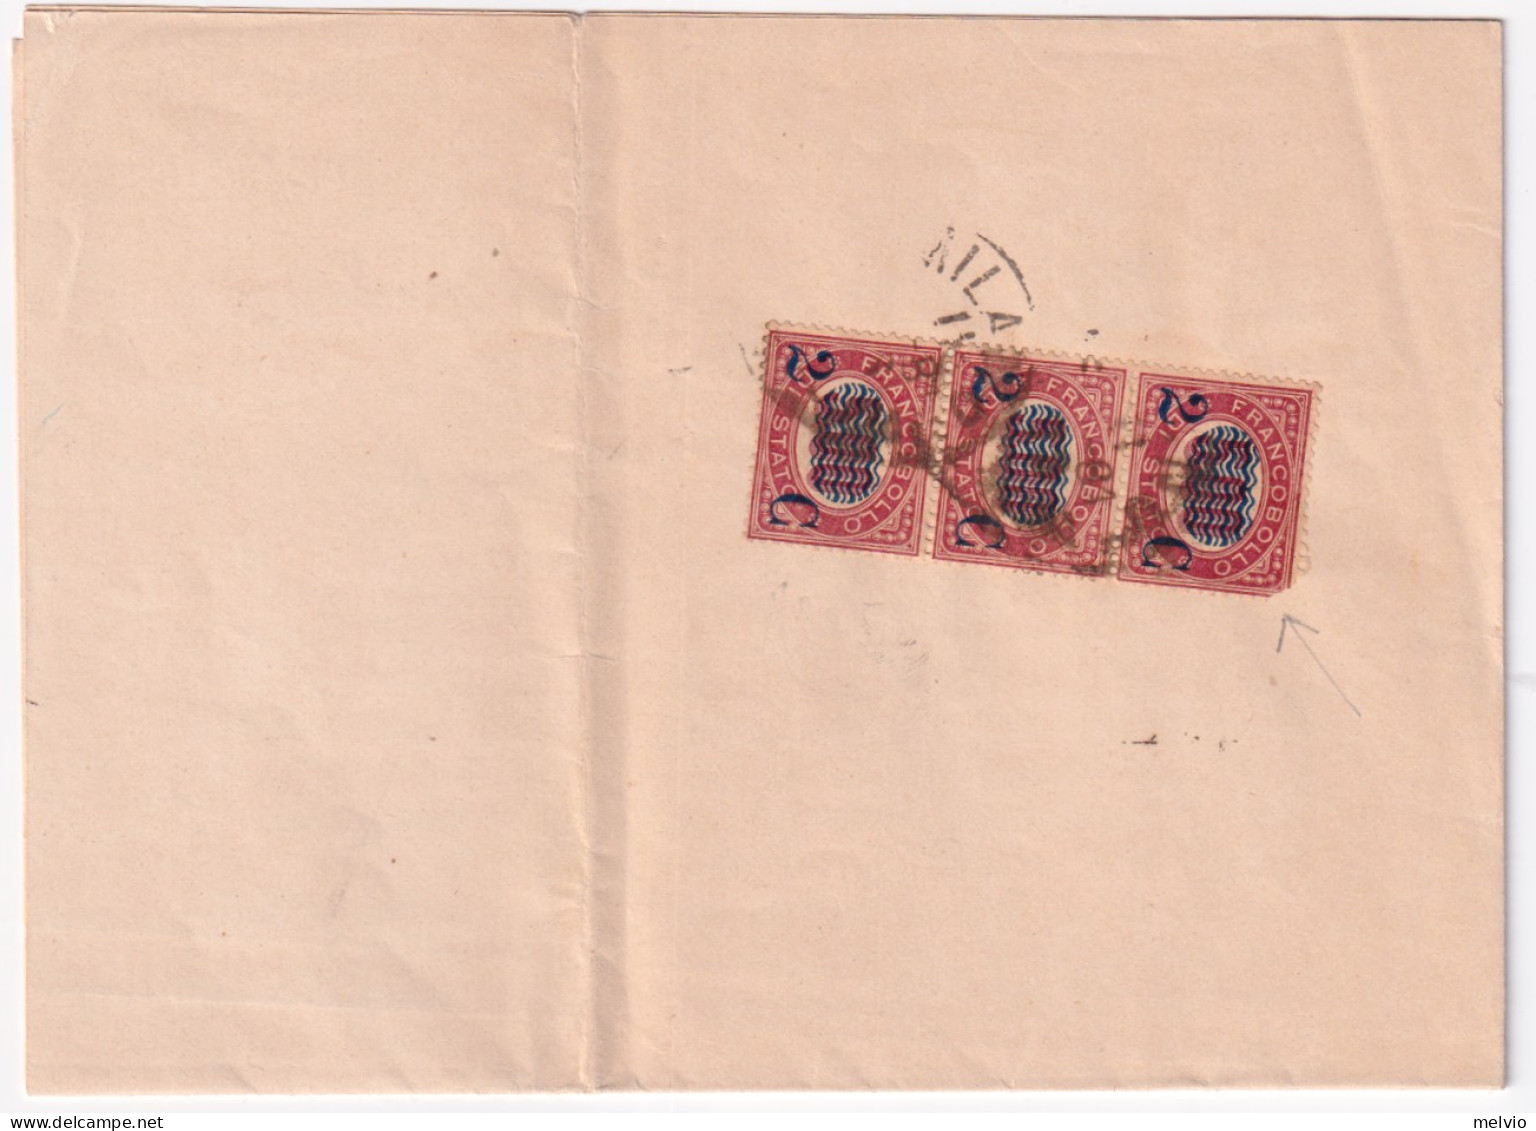 1881-SERVIZI Sopr. Striscia 3 C.2/5,00 (35 Uno Difett.) Su Stampe Milano (11.3) - Marcofilie